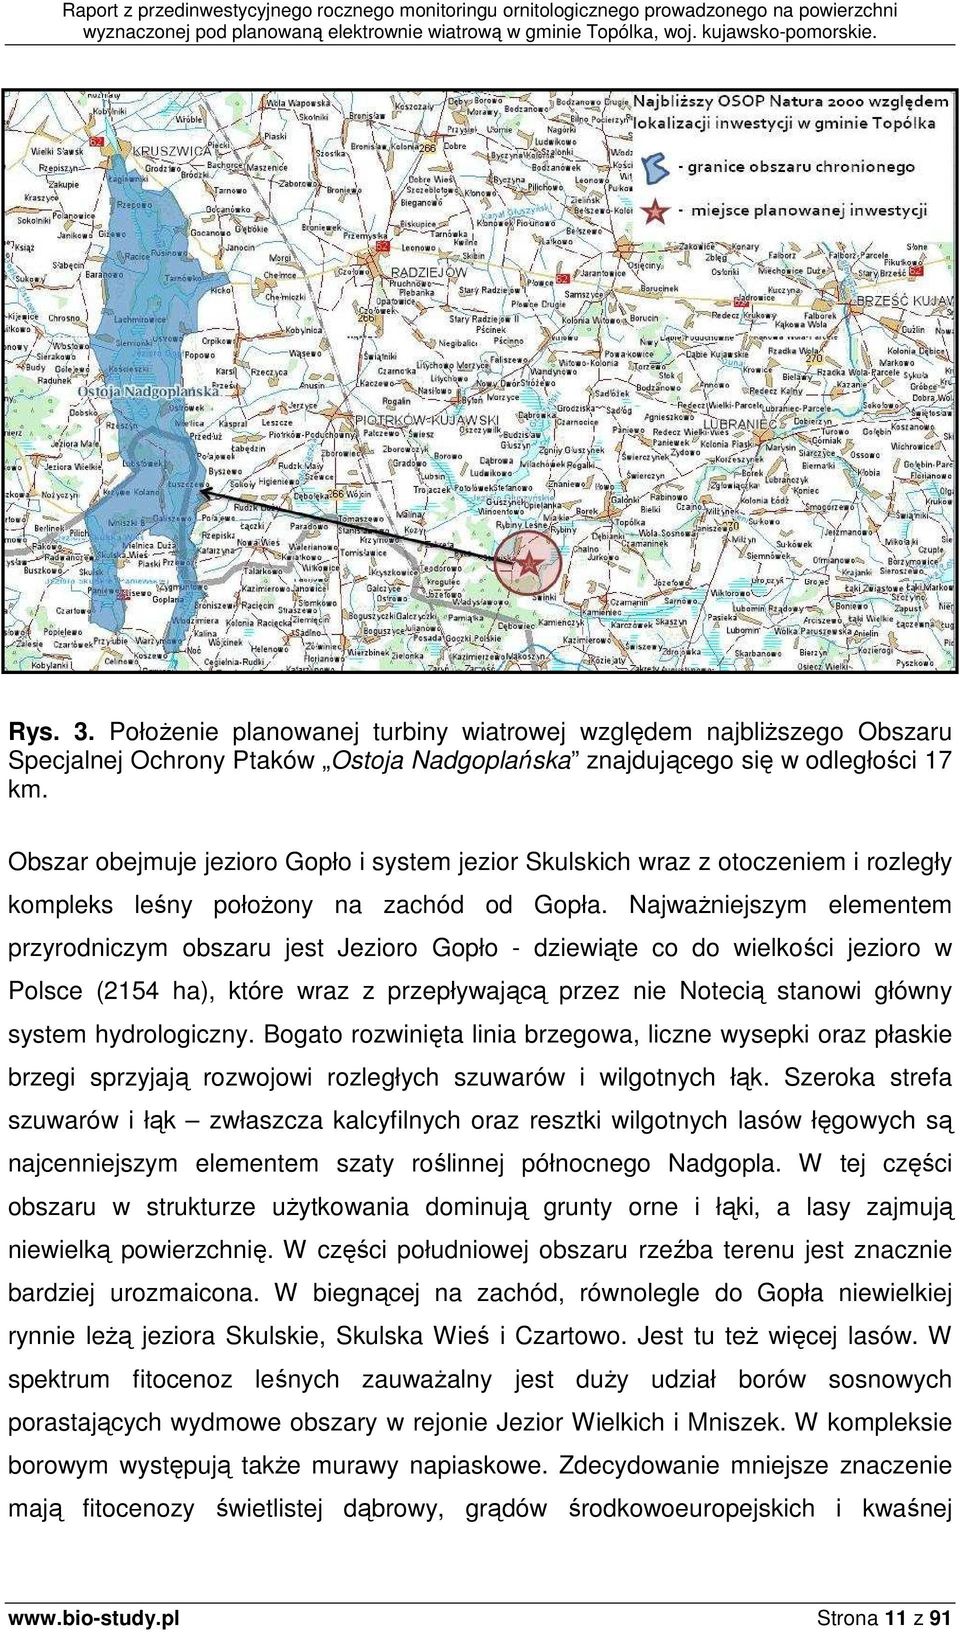 NajwaŜniejszym elementem przyrodniczym obszaru jest Jezioro Gopło - dziewiąte co do wielkości jezioro w Polsce (2154 ha), które wraz z przepływającą przez nie Notecią stanowi główny system